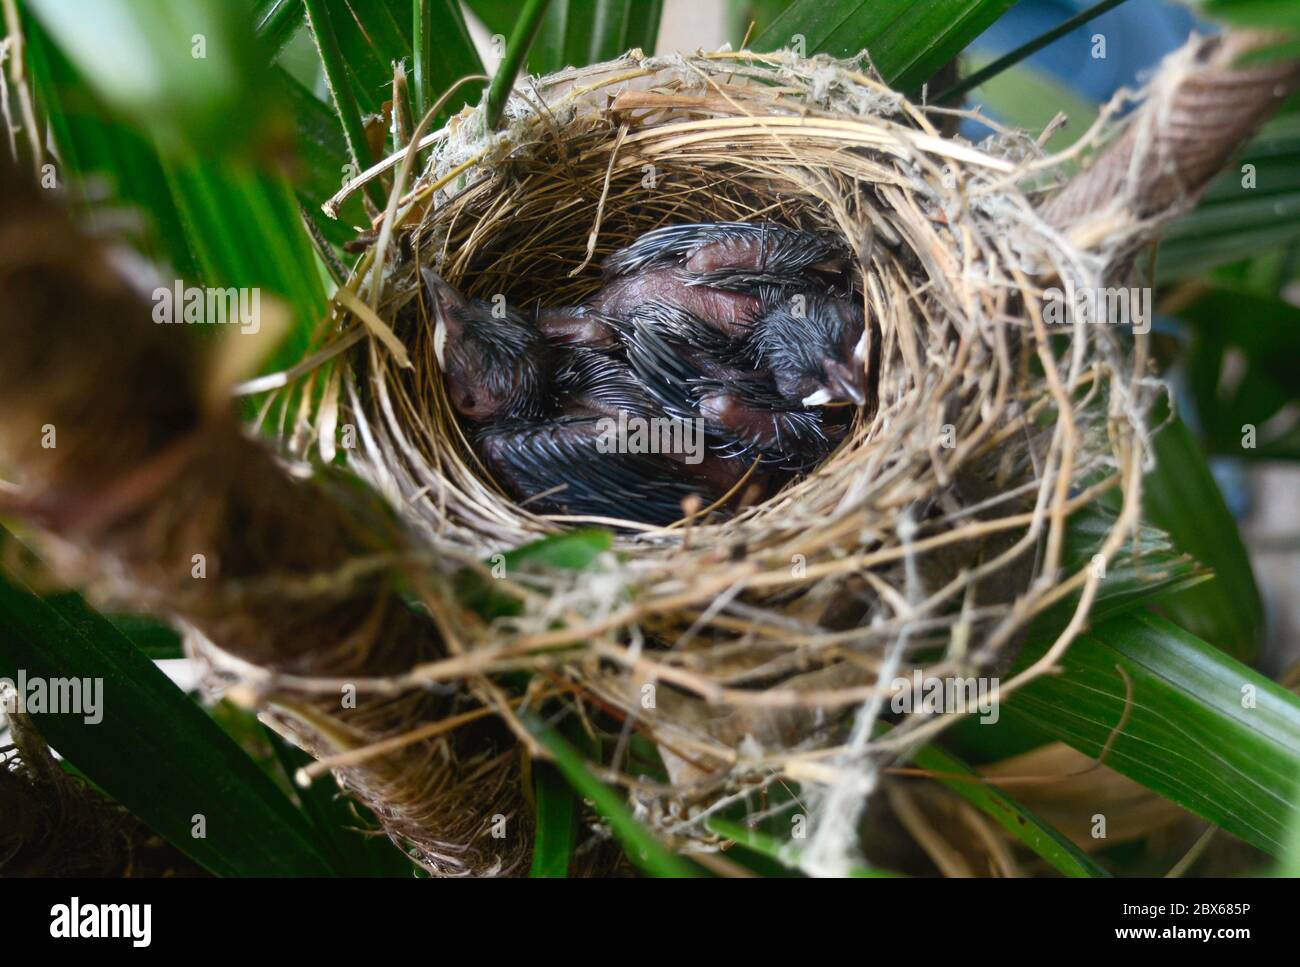 Les petits oiseaux dormant dans le nid attendent que la mère apporte de la nourriture. Banque D'Images